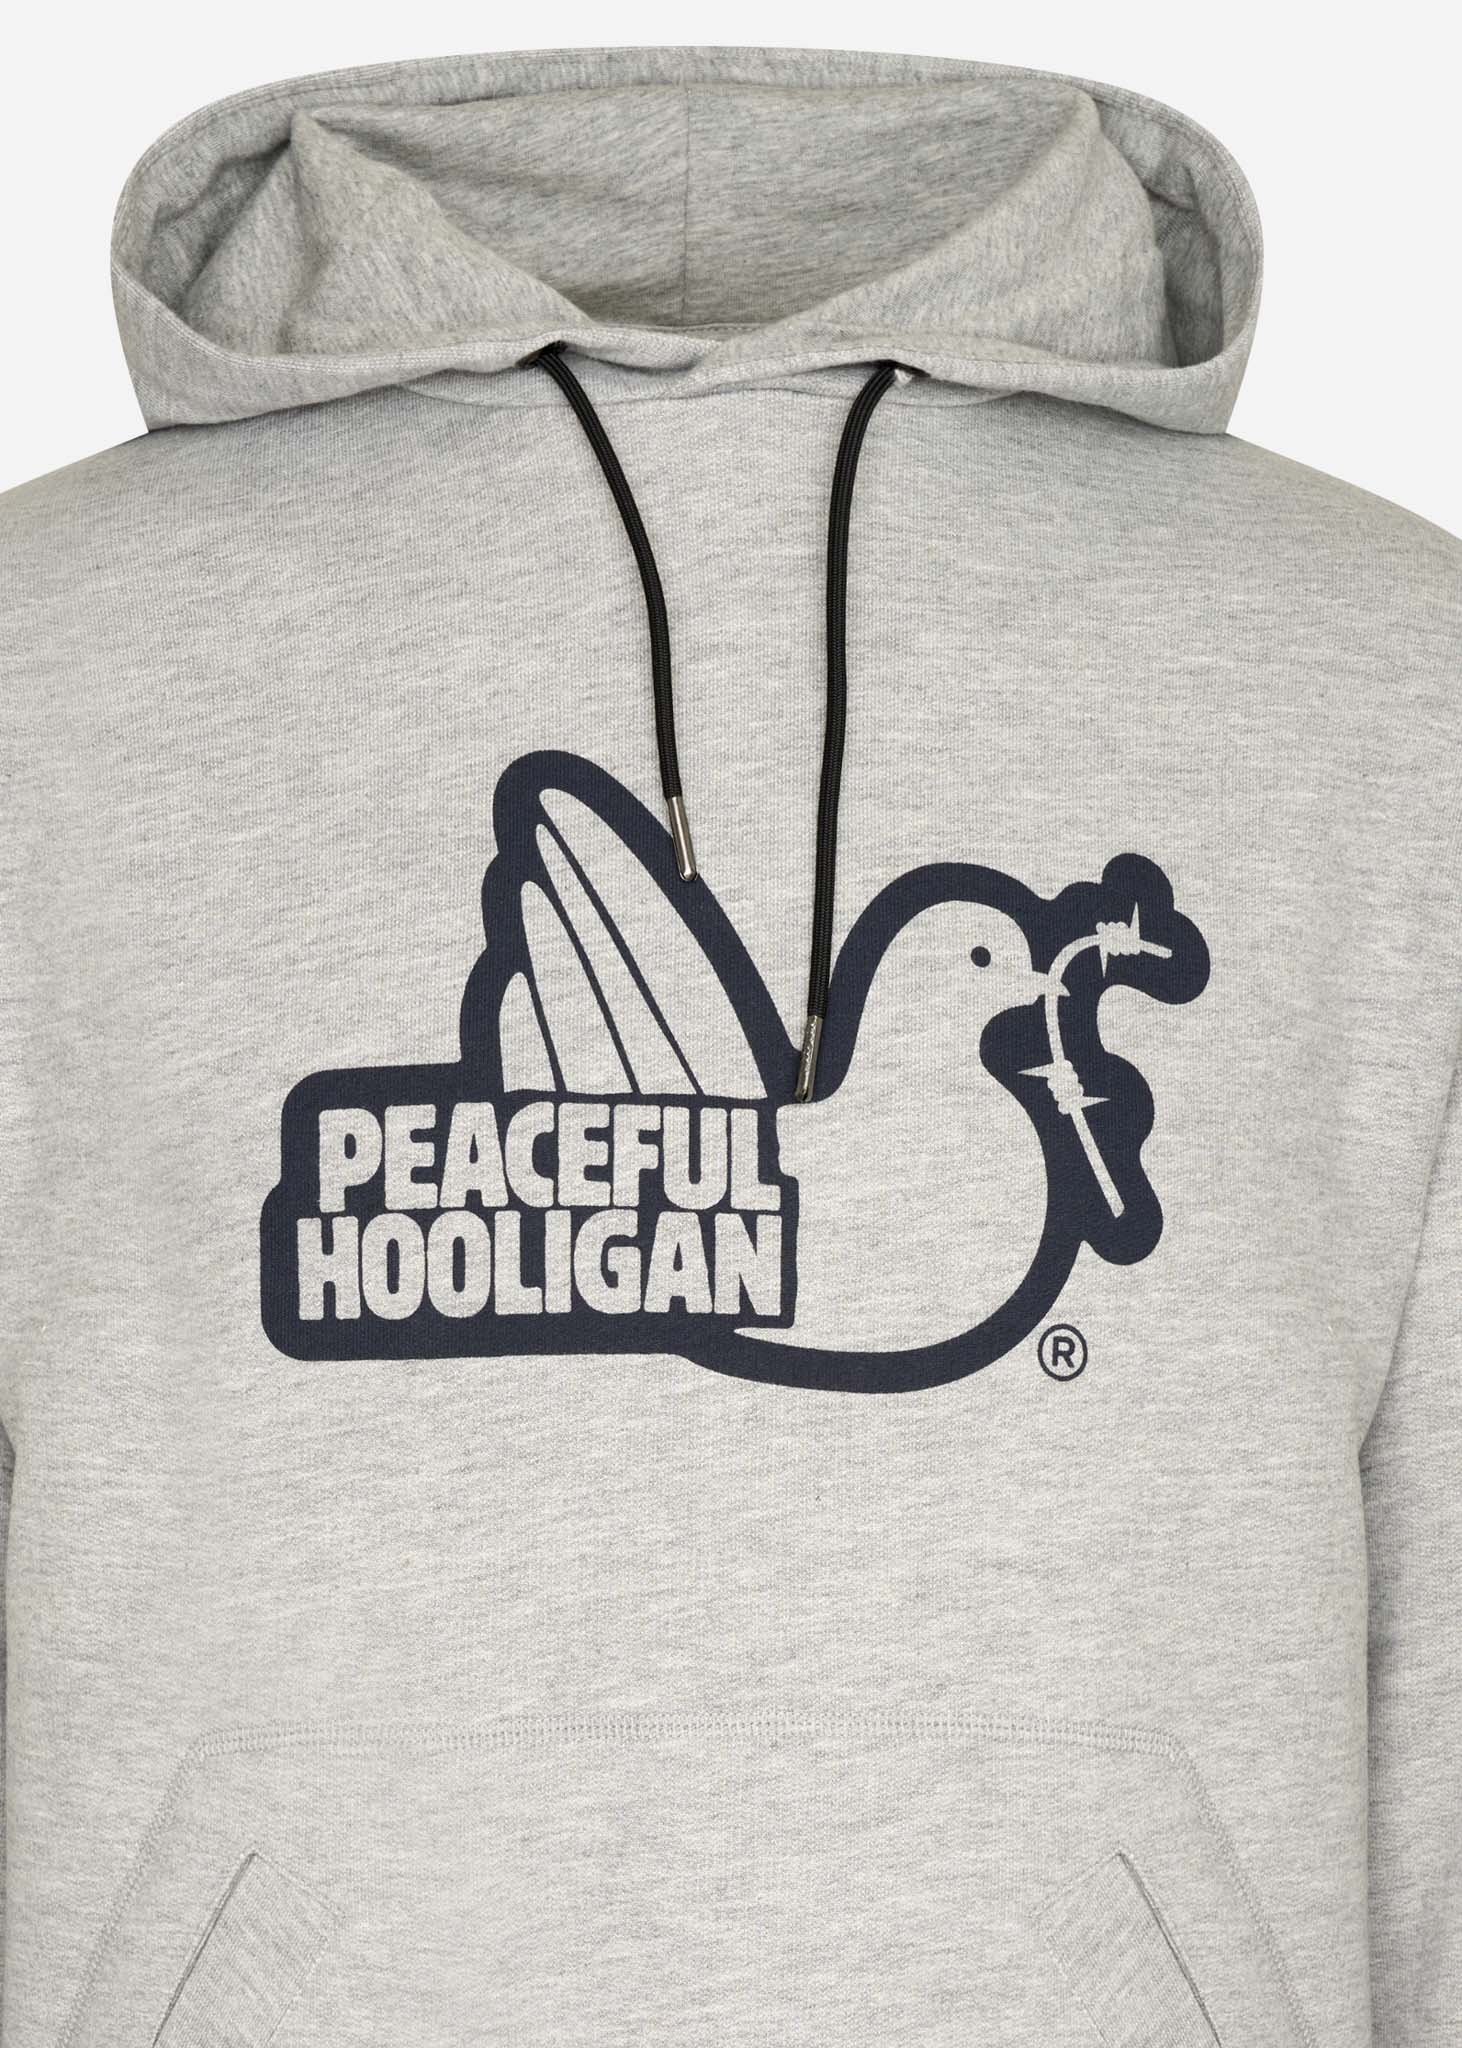 Peaceful Hooligan Hoodies  Outline hoodie - marl grey 